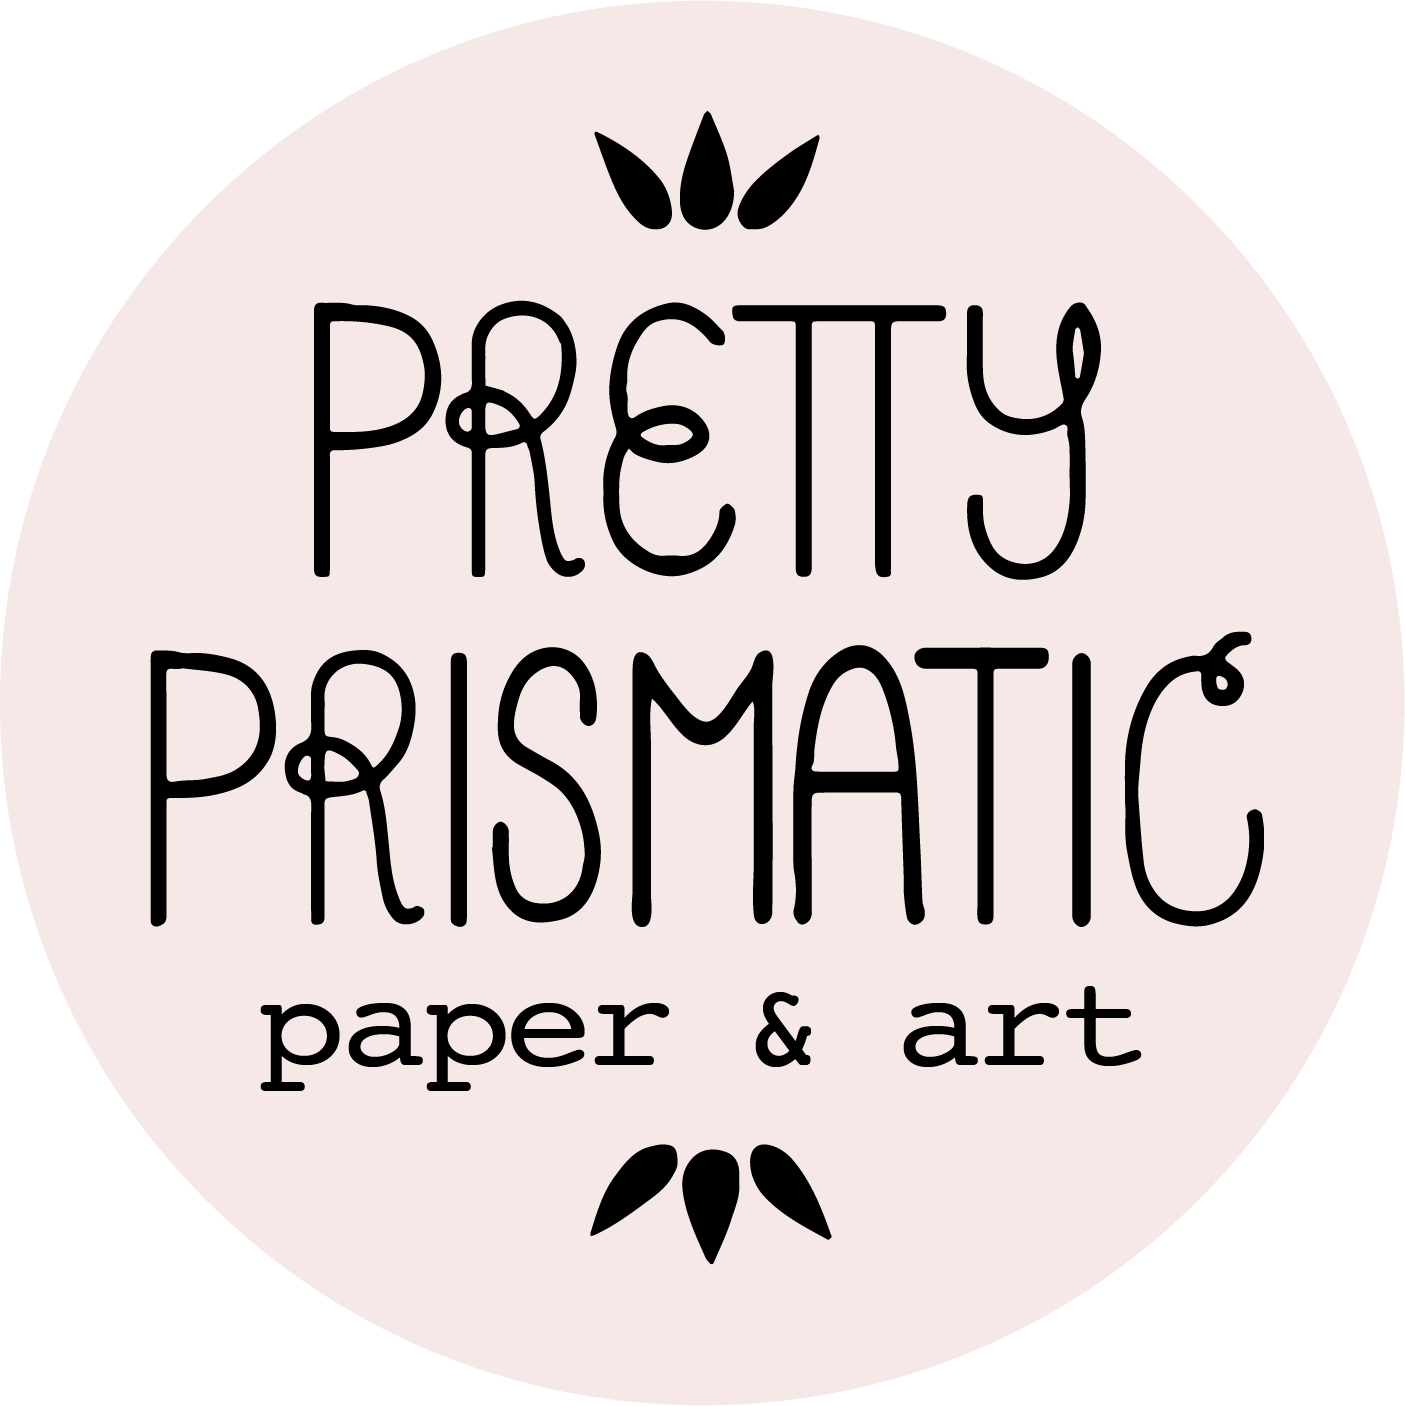 Pretty Prismatic paper & art